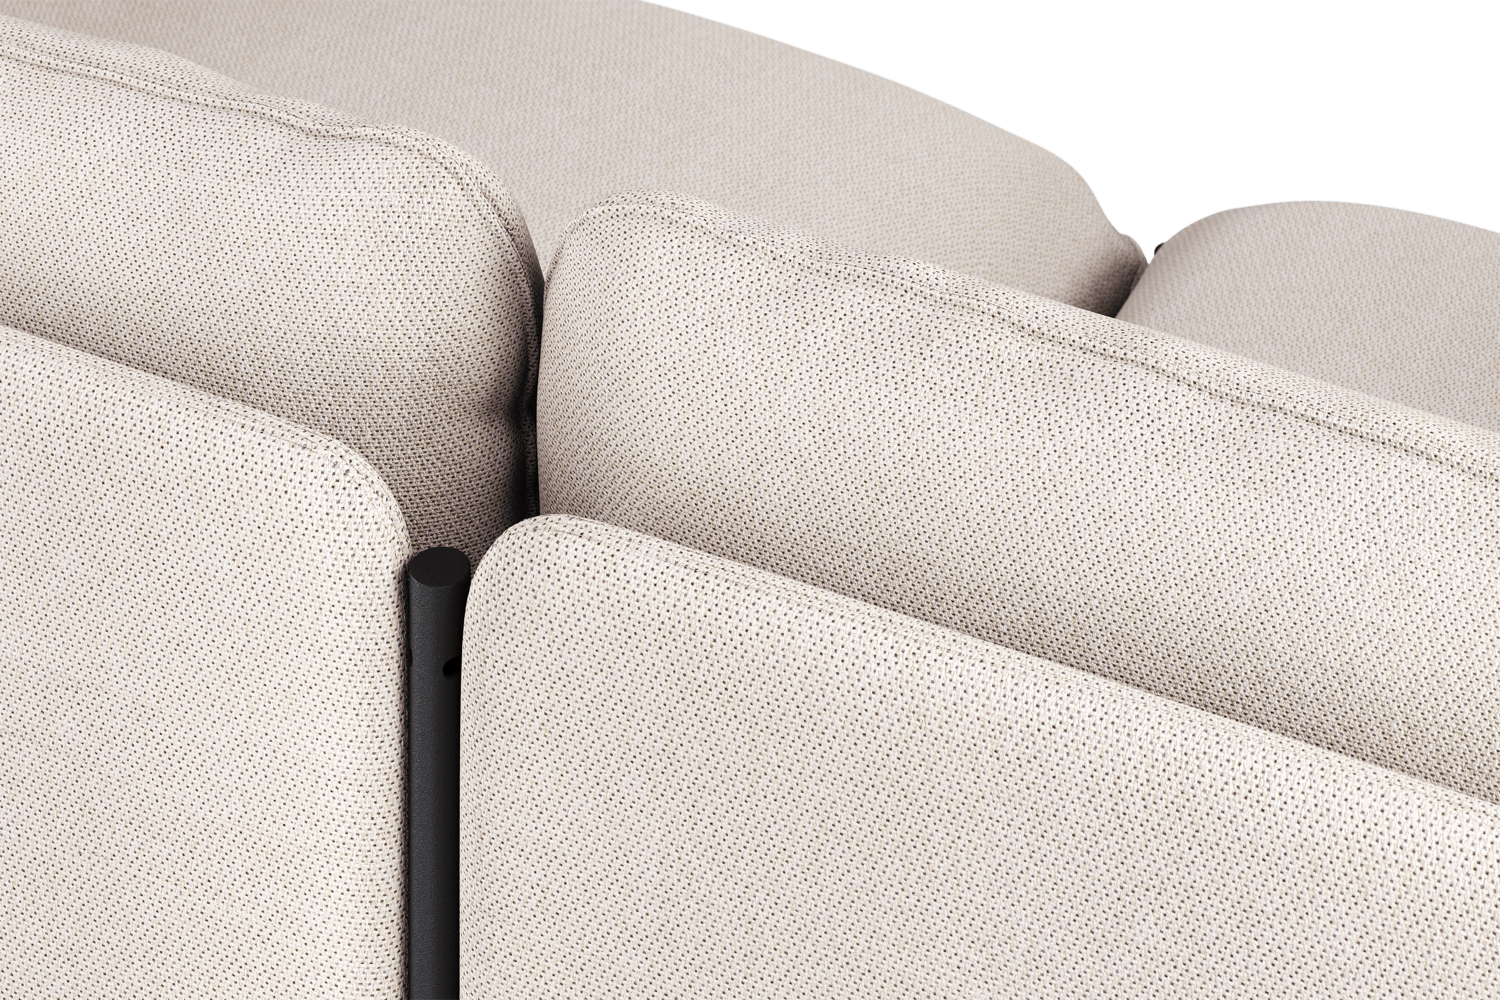 Toom Modular Sofa 4-Sitzer Konfiguration 2a in Oatmilk Beige  präsentiert im Onlineshop von KAQTU Design AG. 4er Sofa ist von Noo.ma